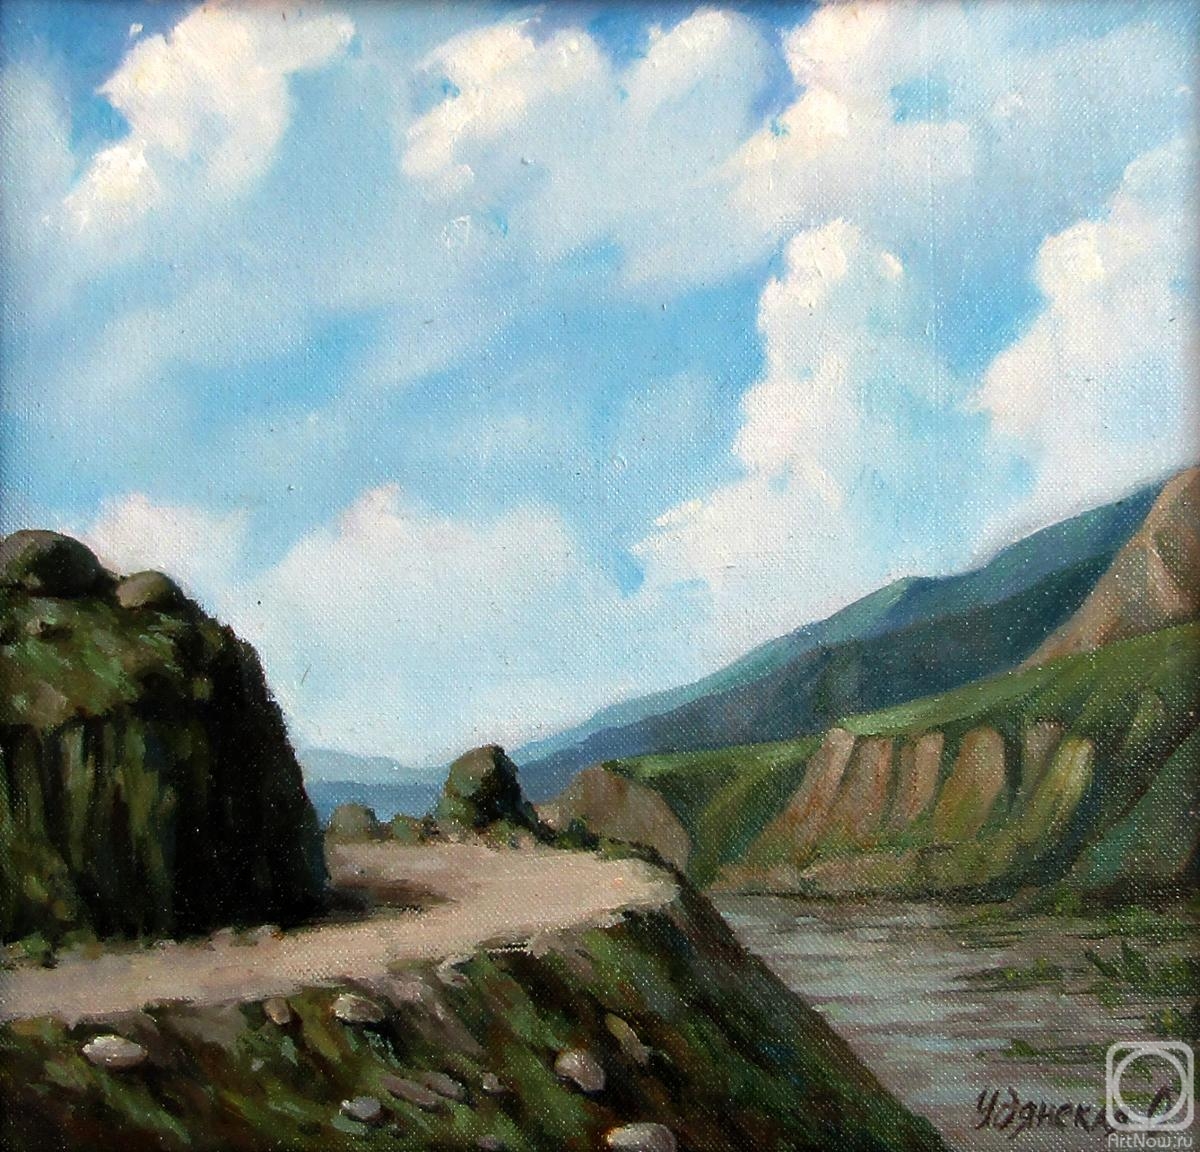 Горы Дагестана» картина Удянской Ольги маслом на холсте — купить на  ArtNow.ru